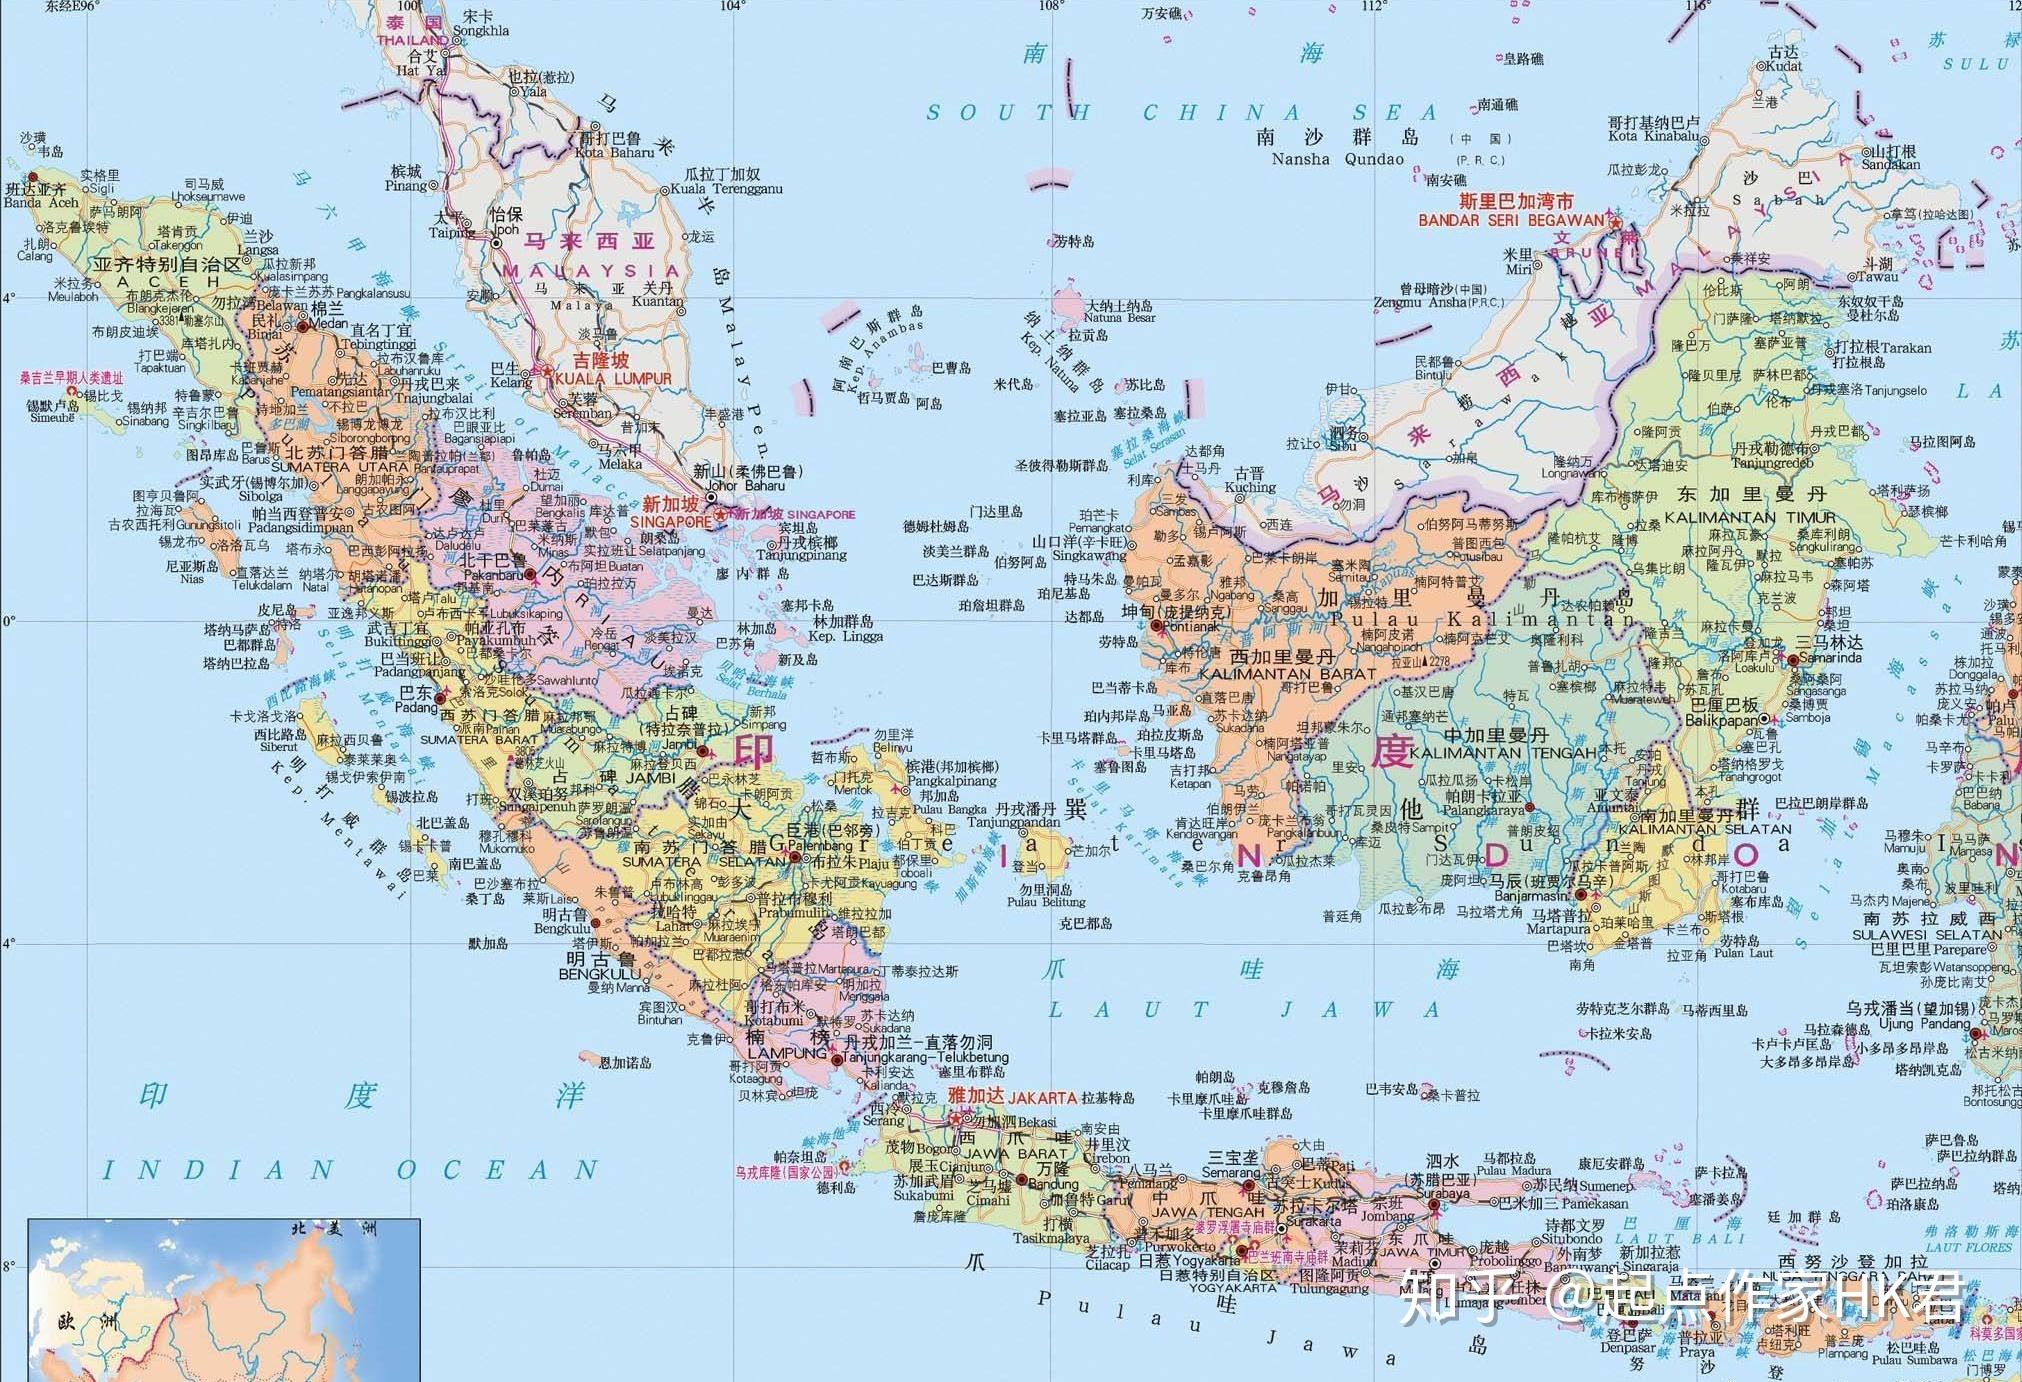 印尼宣布将首都迁至东加里曼丹省未来印尼或分裂